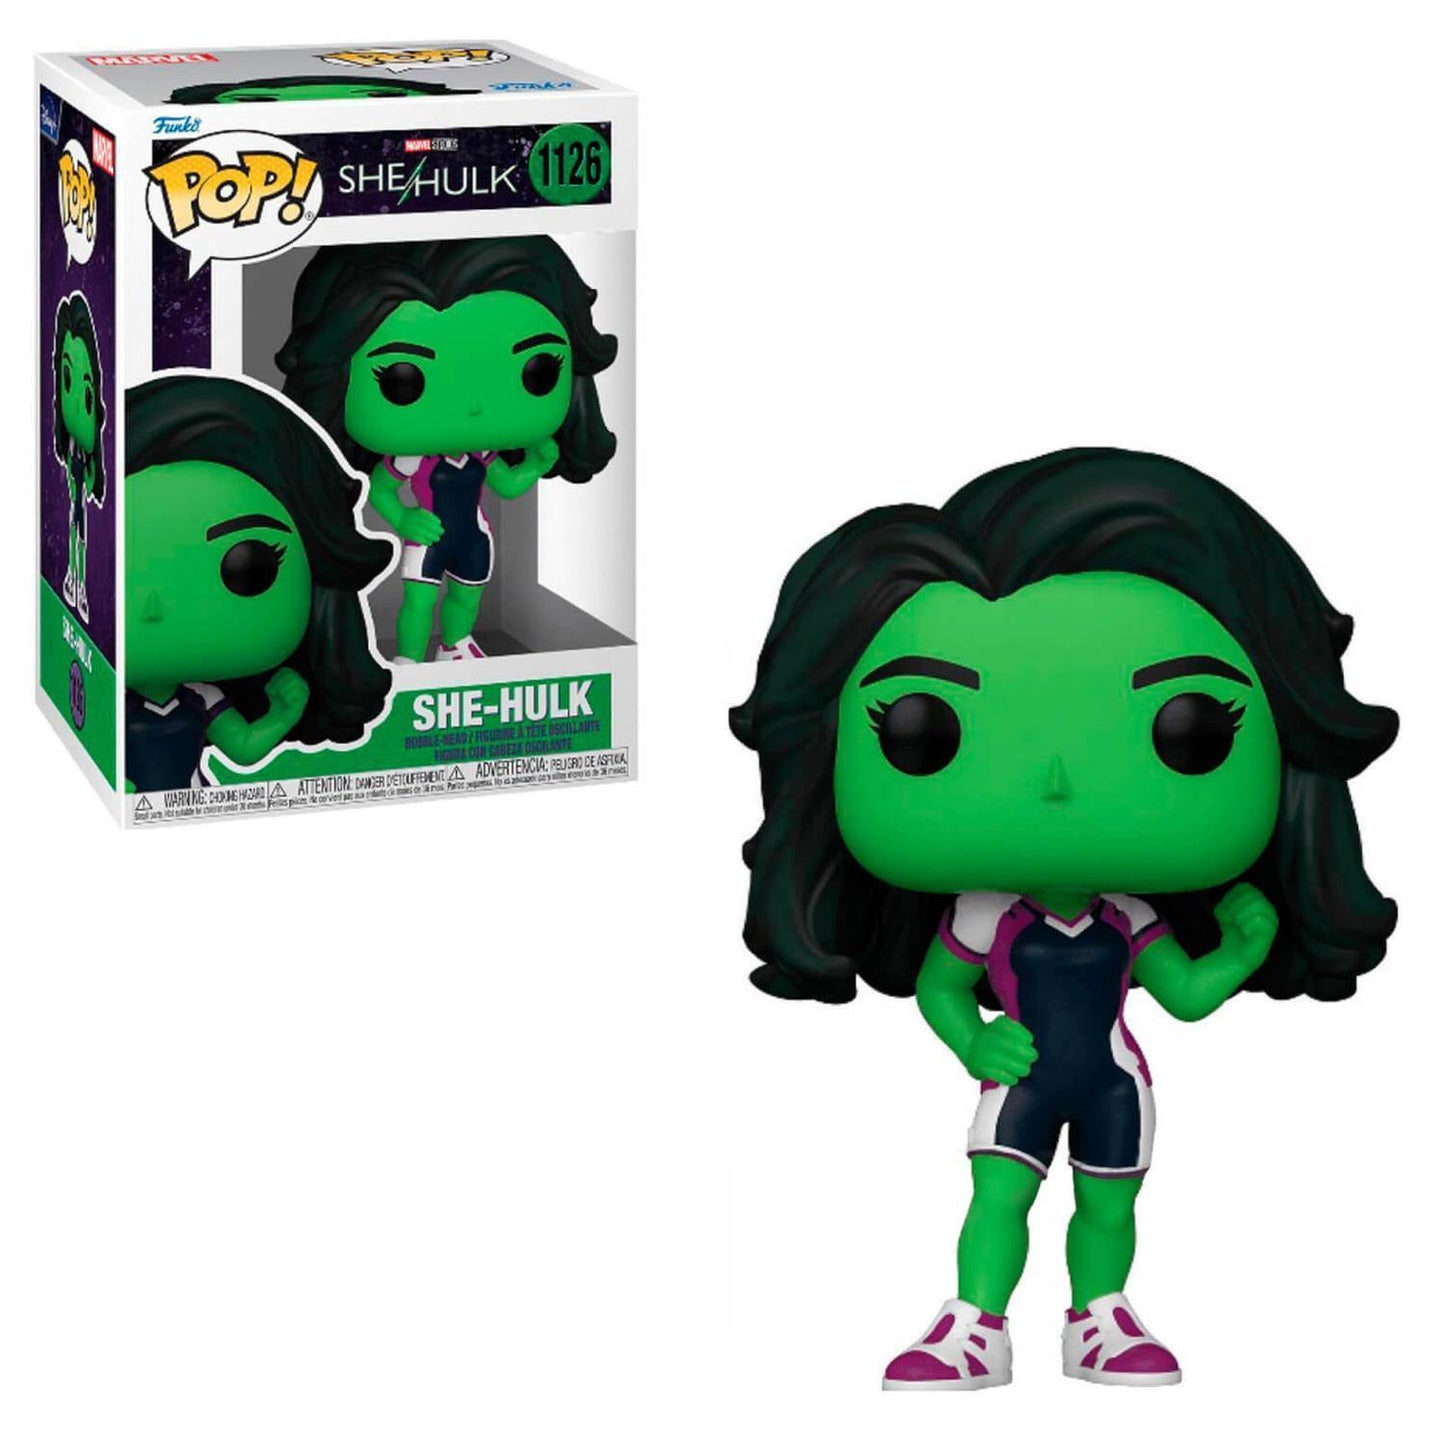 Hulk Funko POP! 1126 She-Hulk Marvel